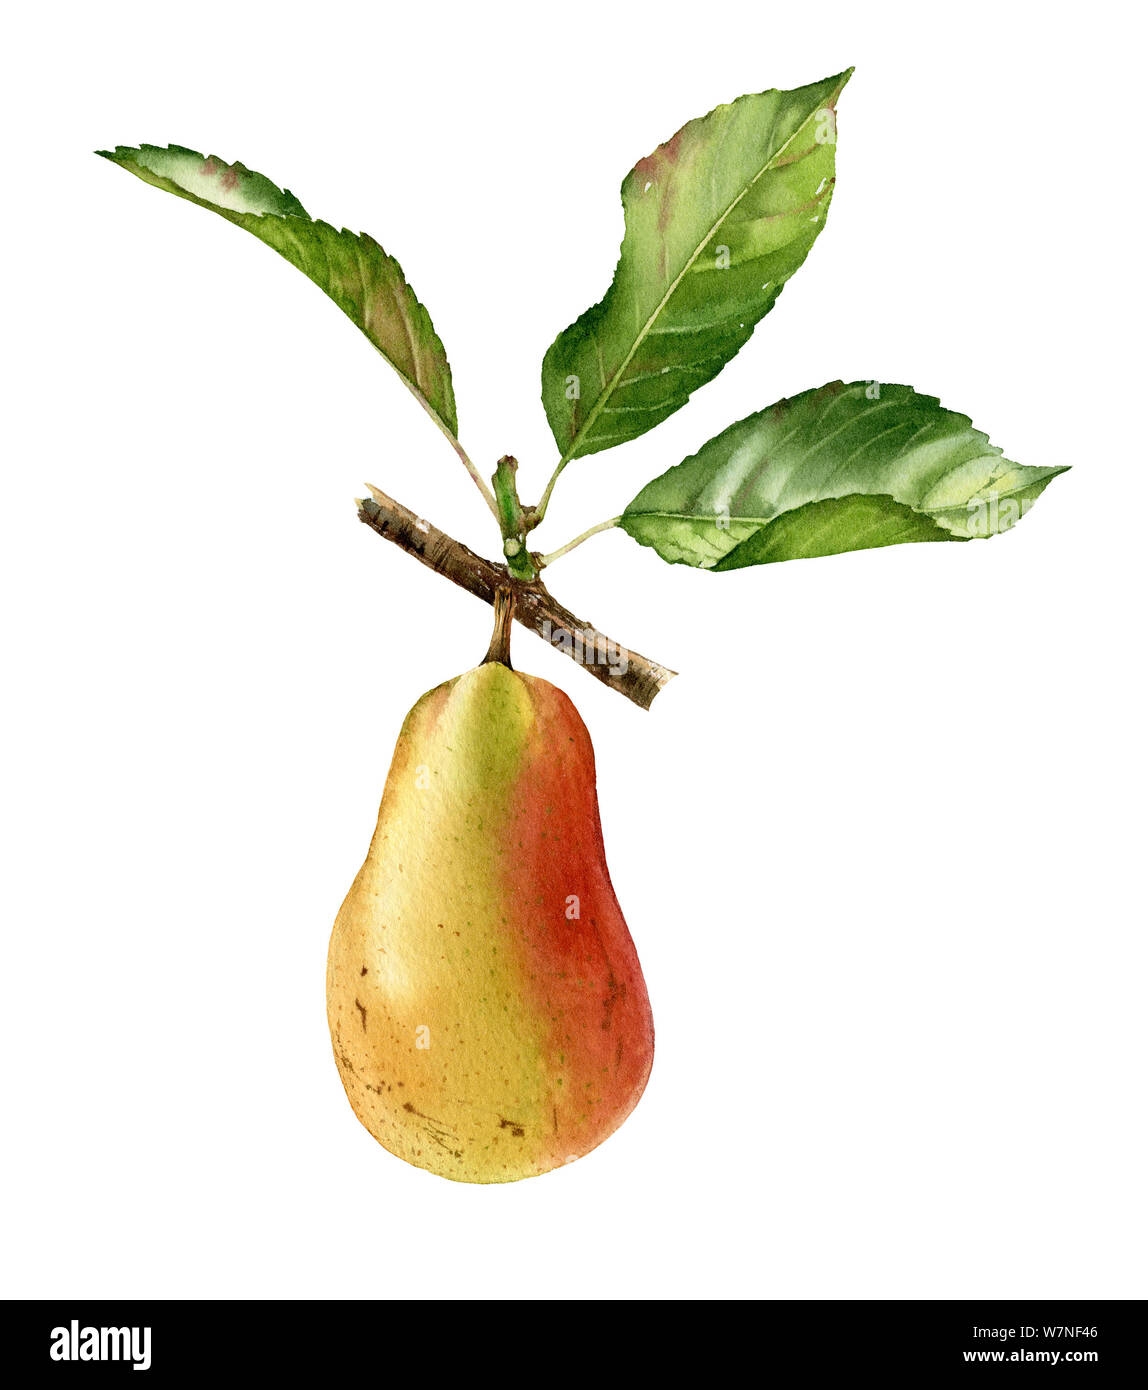 Illustration aquarelle botanique réaliste pear tree branche avec fruits entiers et les feuilles mûres clipart isolé juteux. peints à la main, d'aliments exotiques frais Banque D'Images